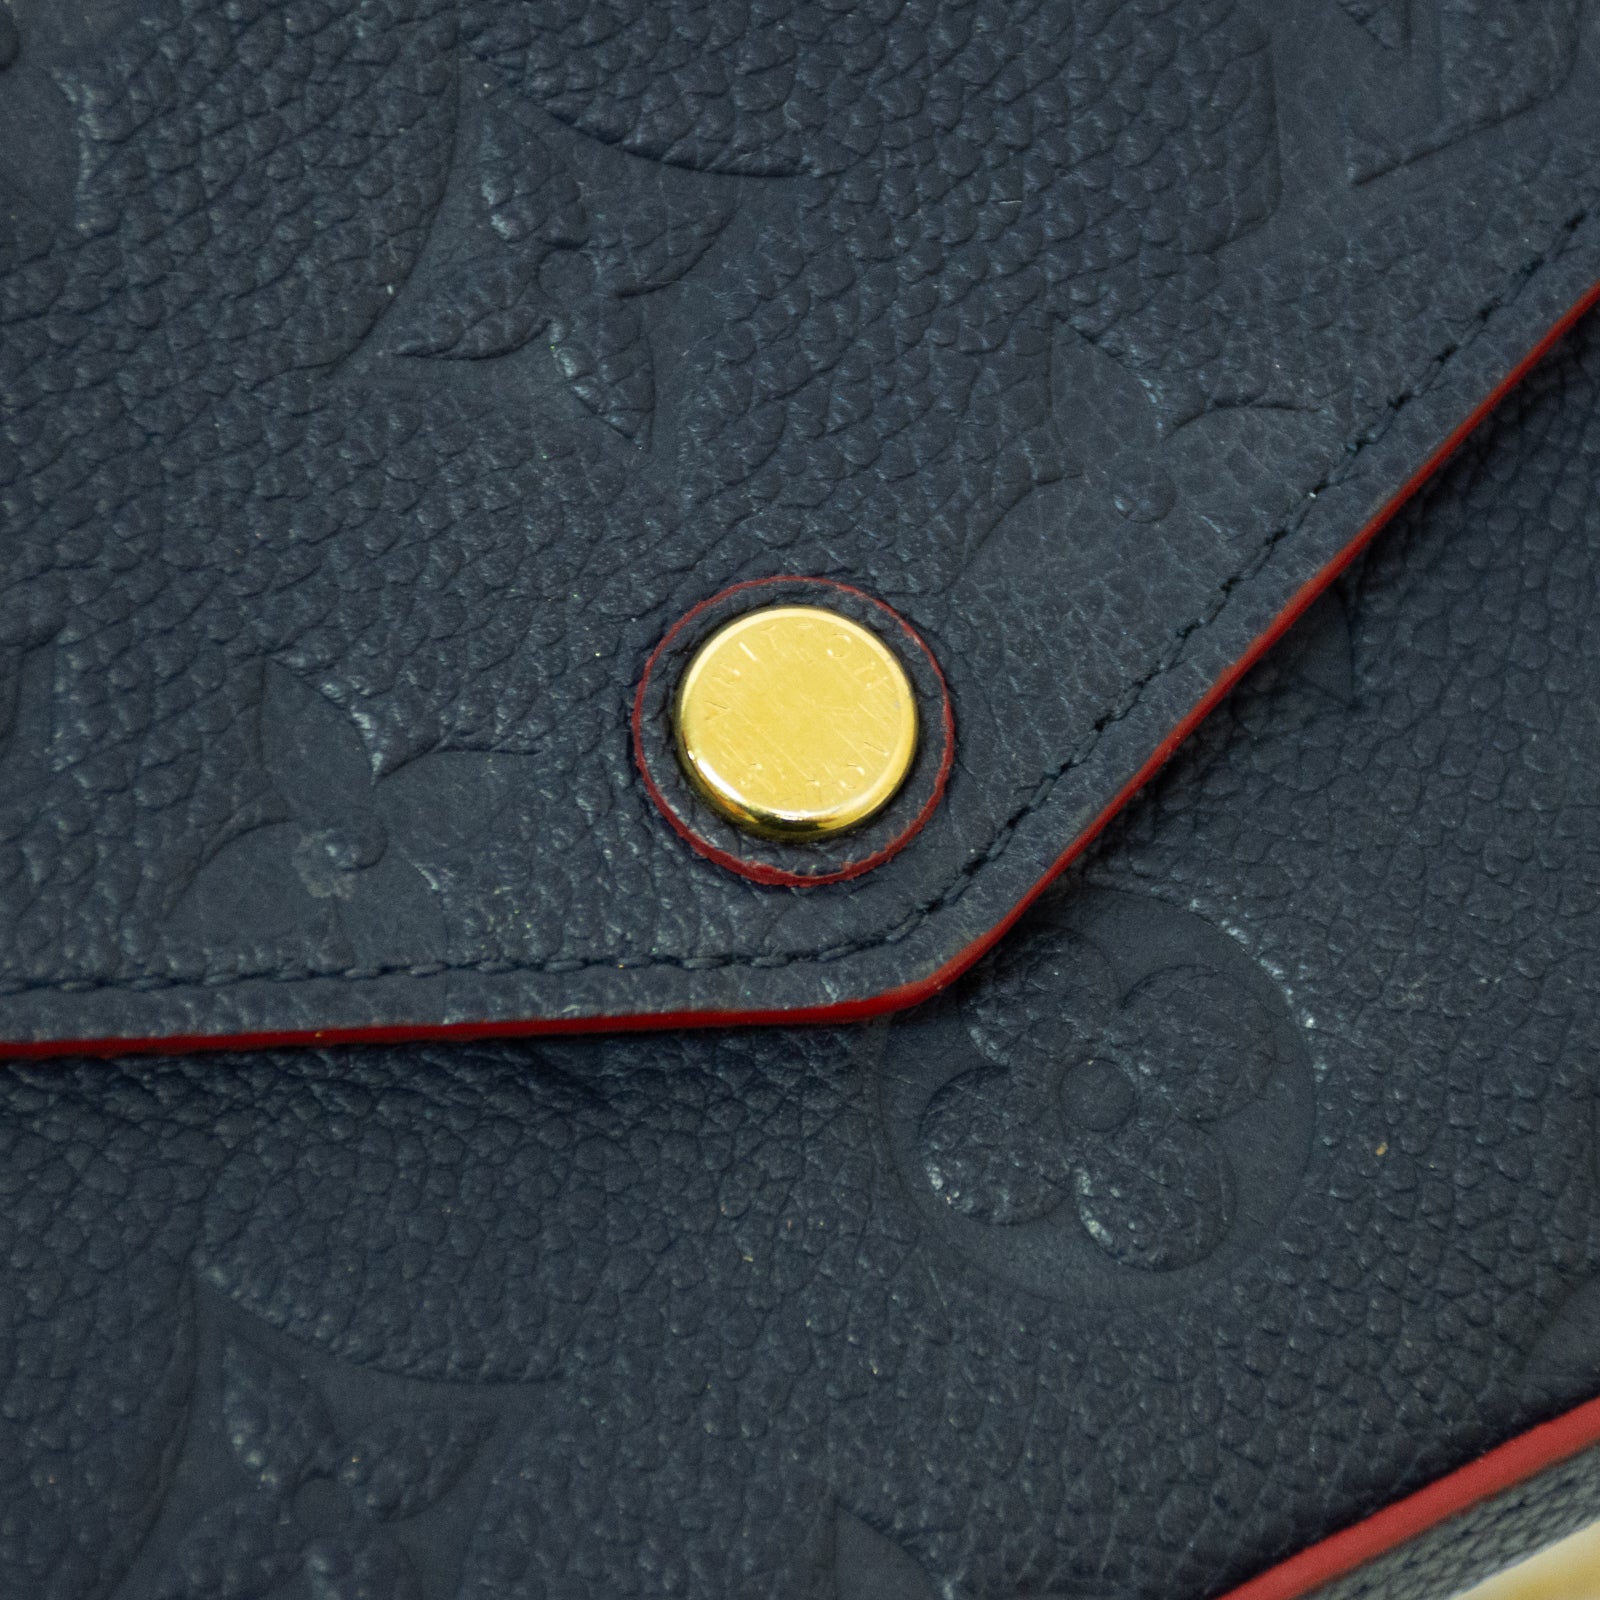 Louis Vuitton Navy & Red Empreinte Leather Monogram Pochette